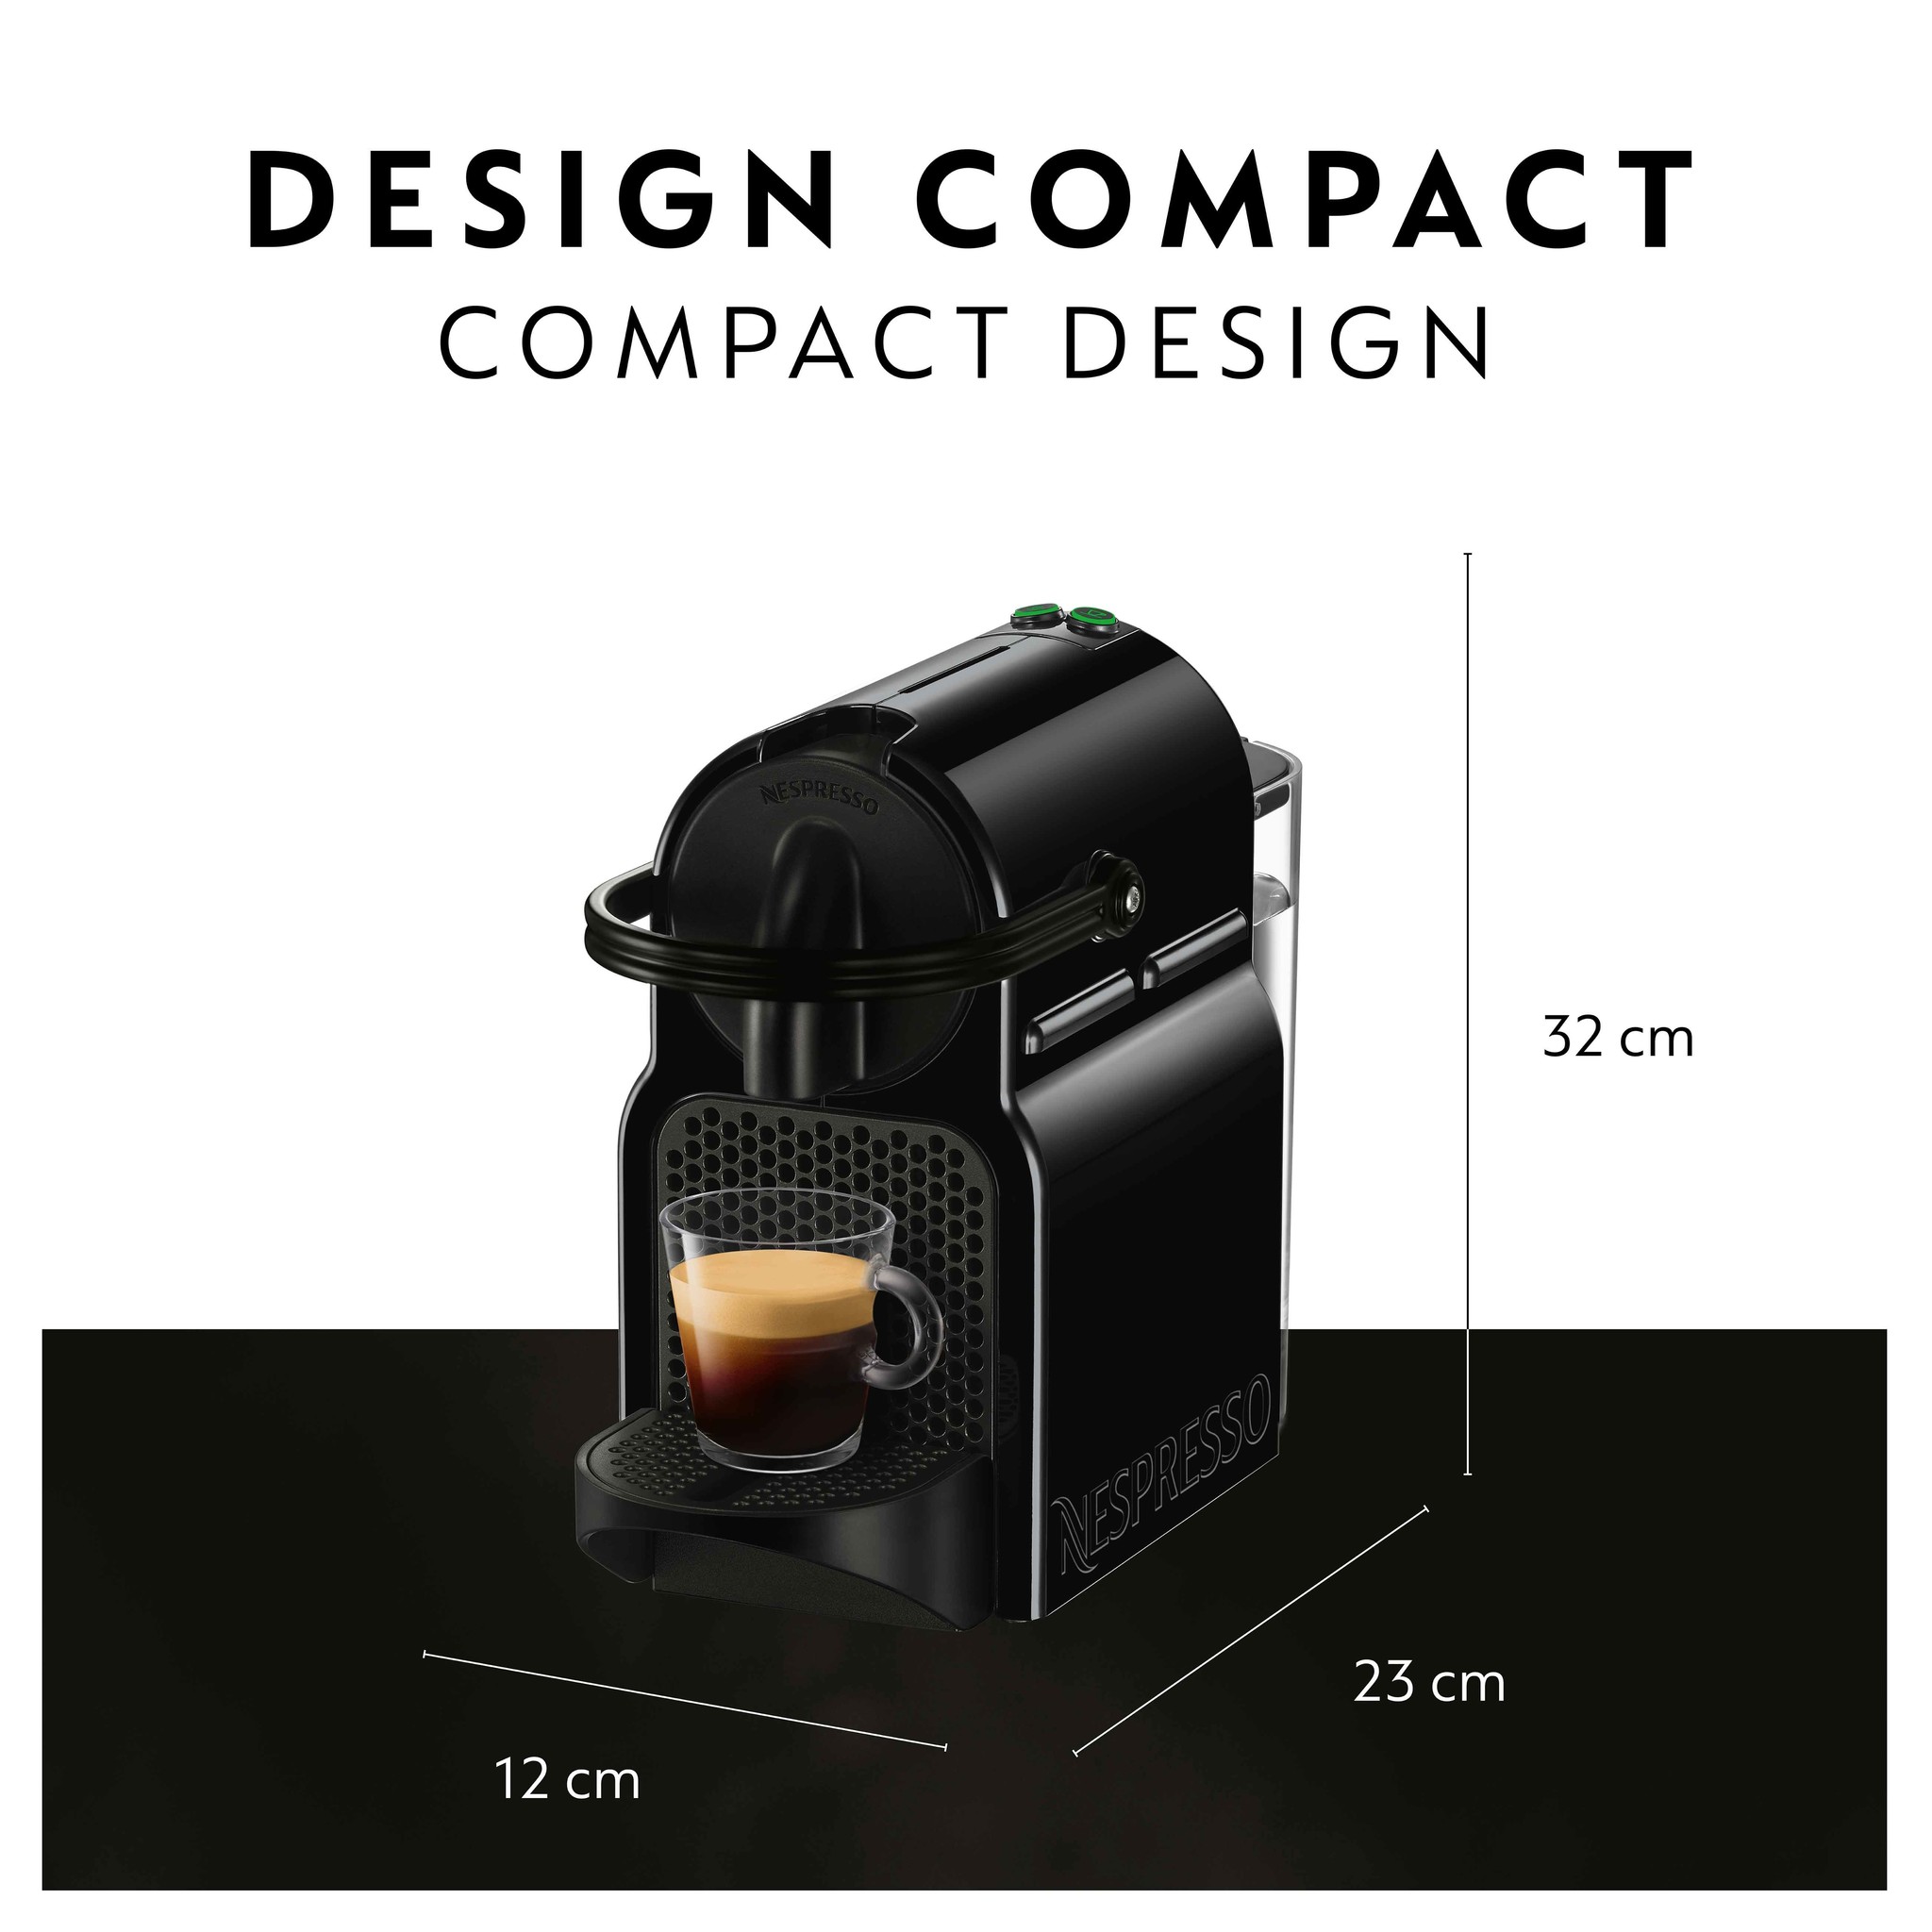 Nespresso Inissia Espresso Machine w/ Milk Frother by DeLonghi 